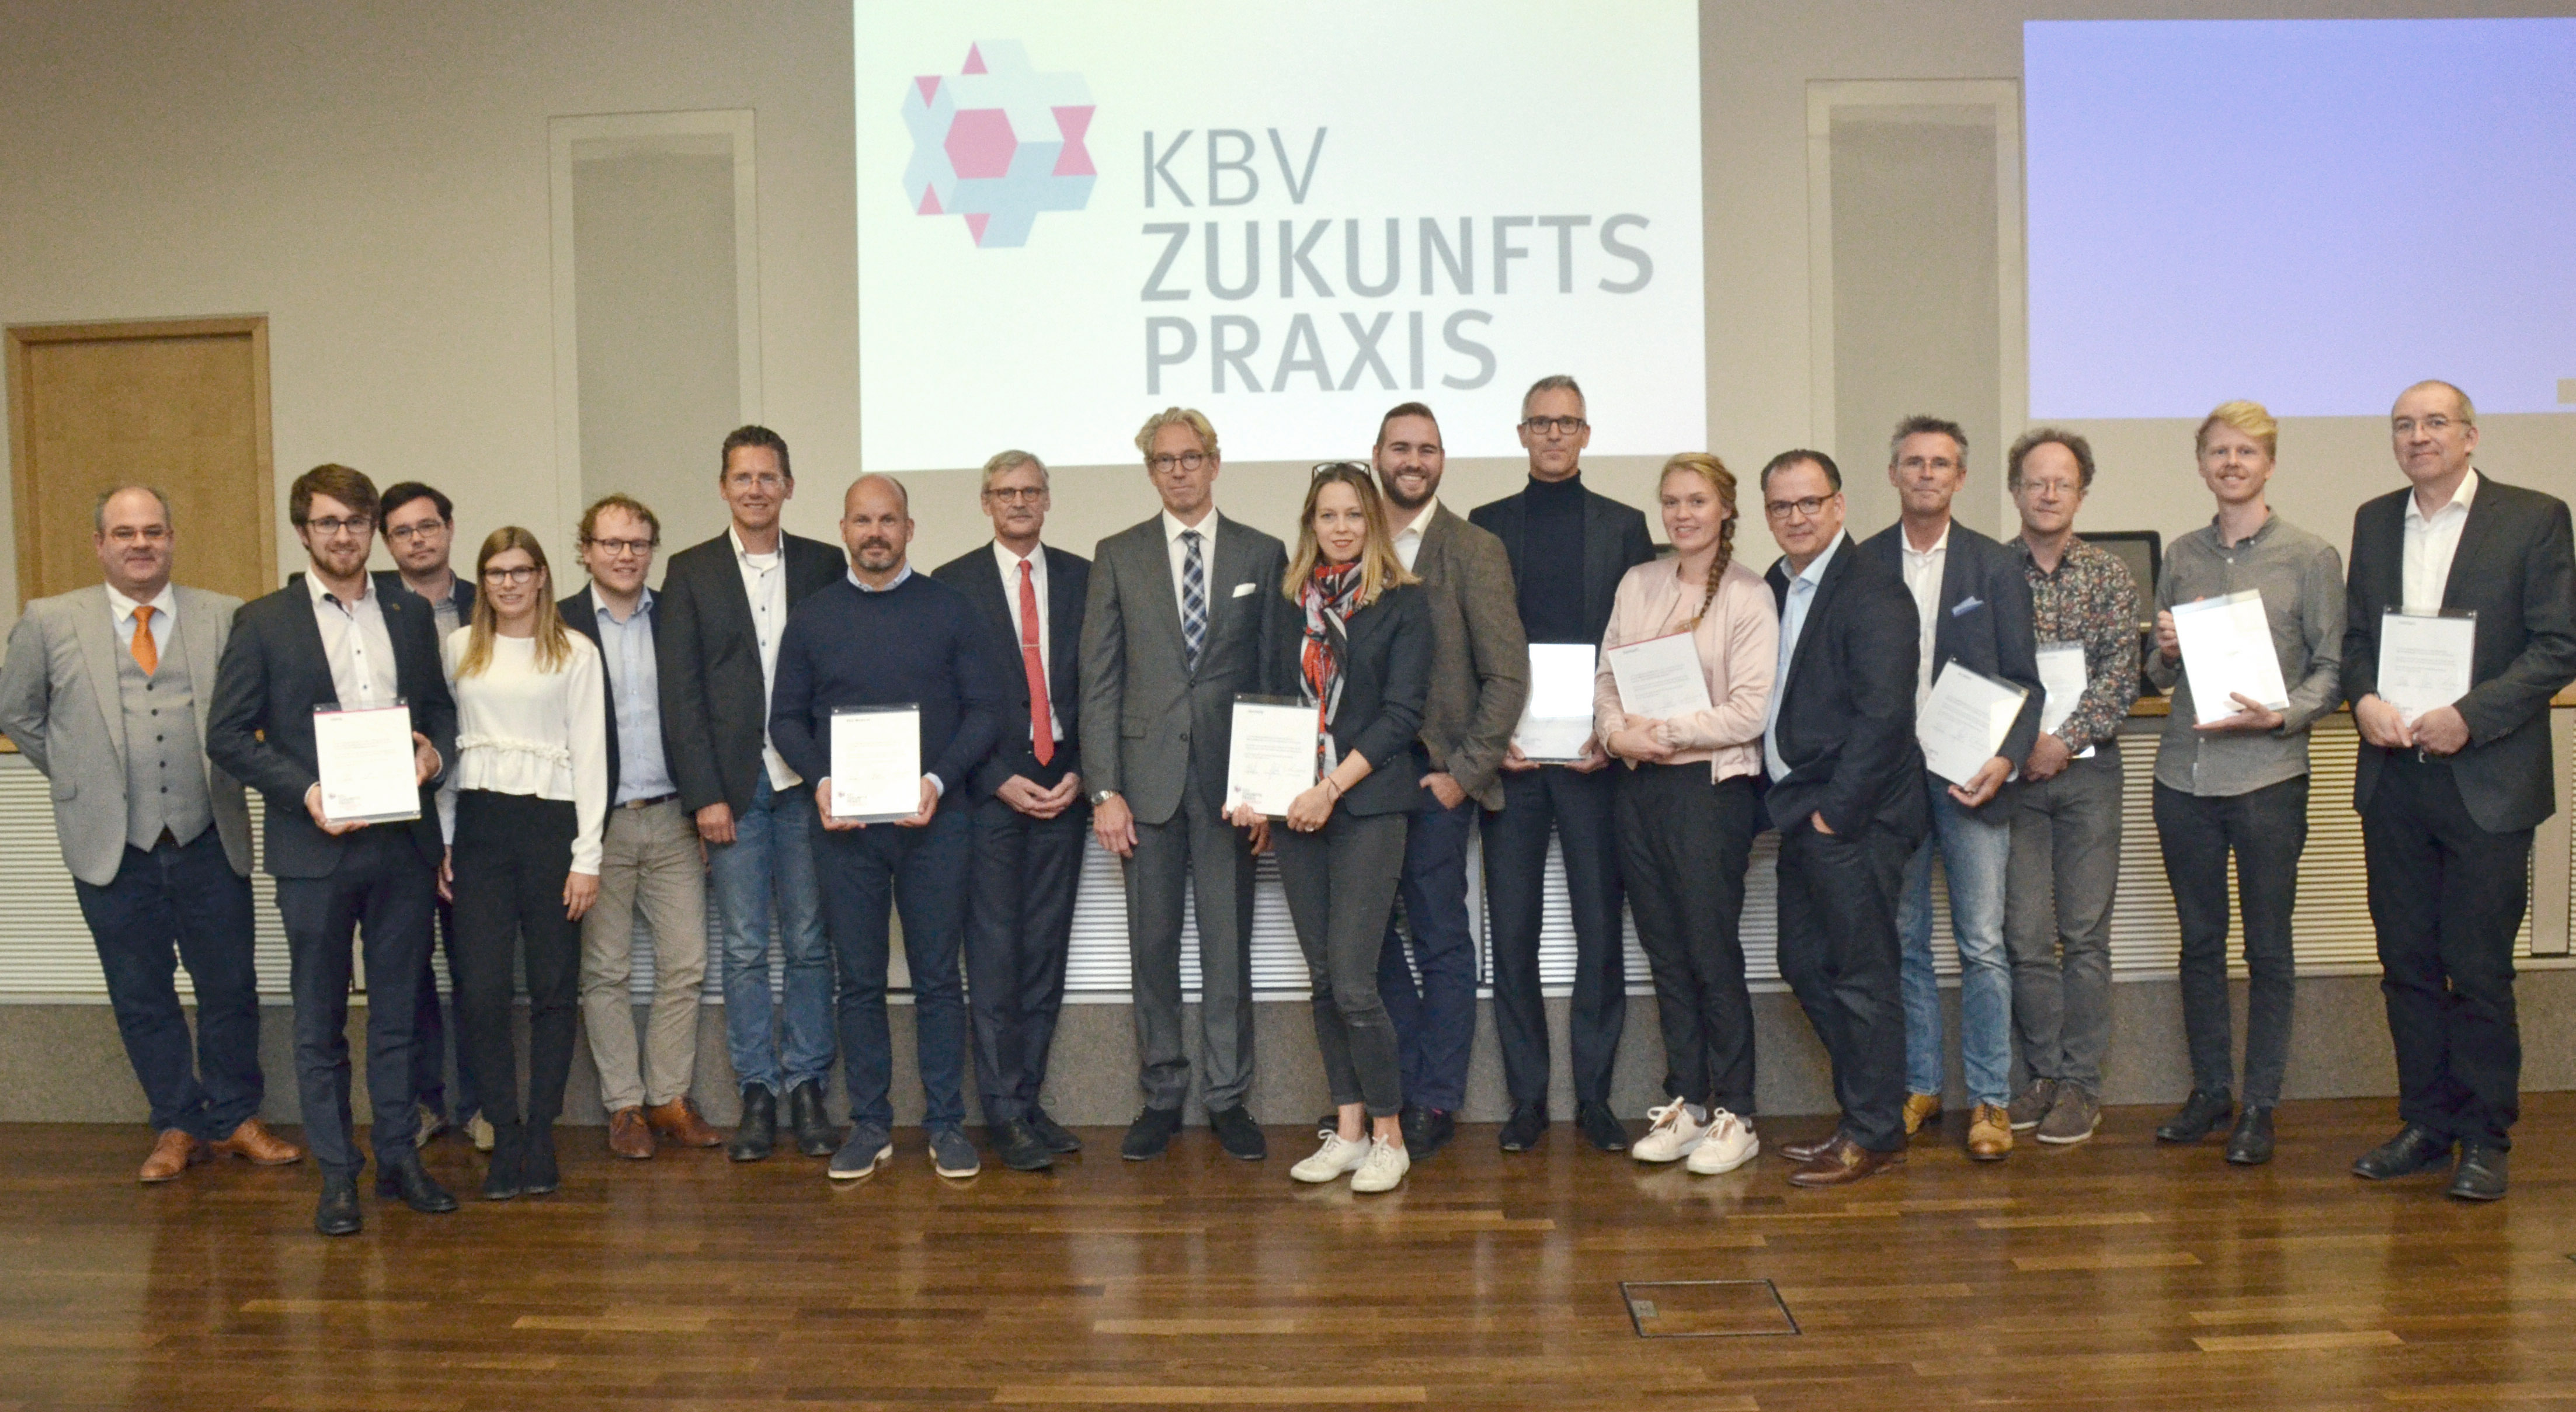 Siegerfoto mit Zertifizierung: RED konnte den Wettbewerb "KBV Zukunftspraxis" für sich entscheiden.